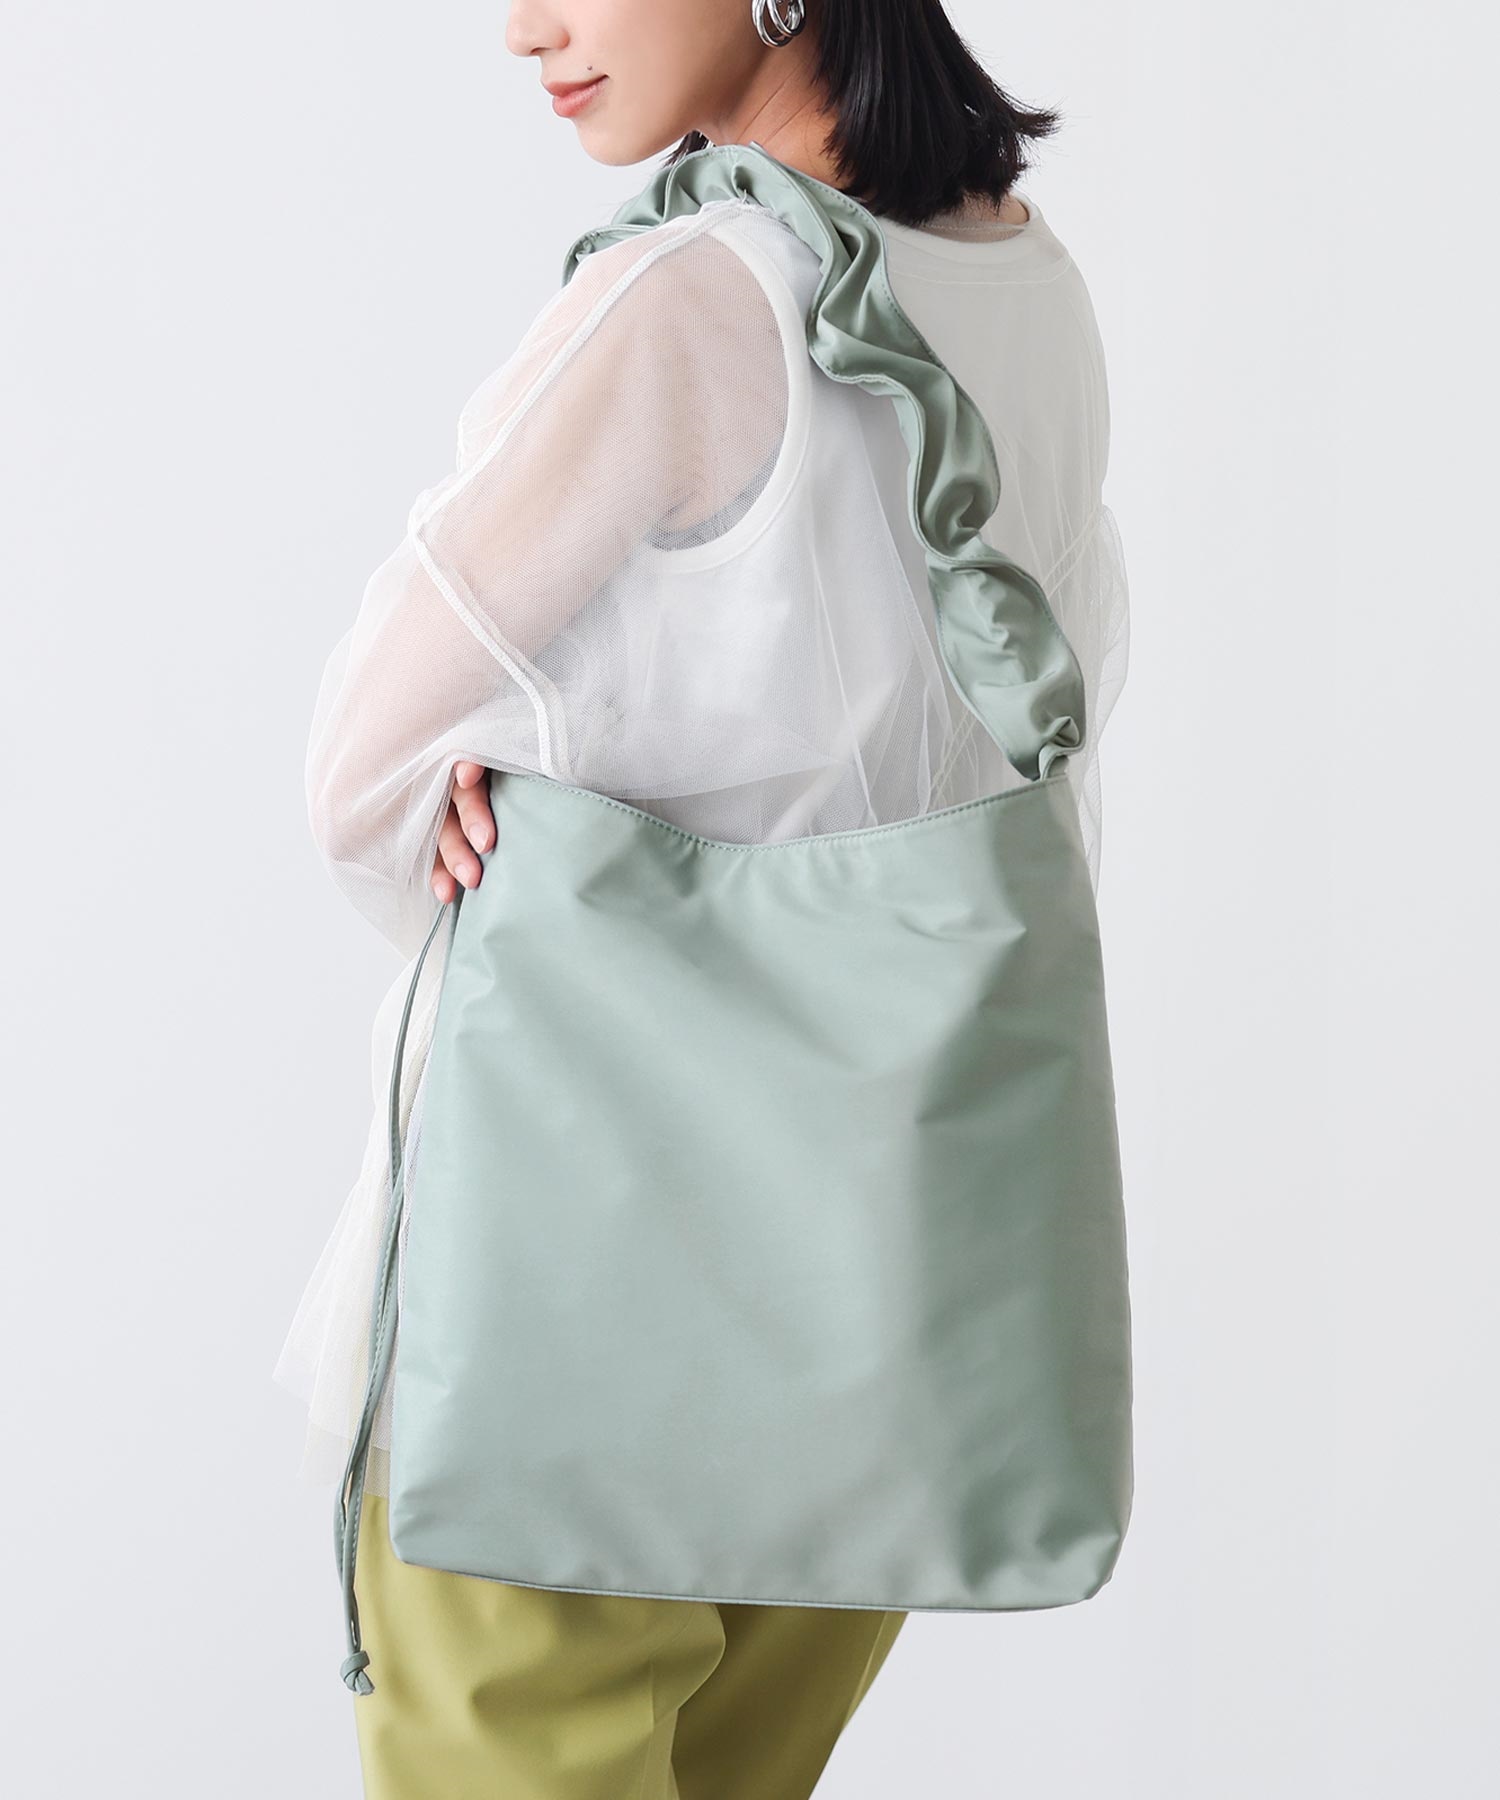 【5/1販売】ショルダーバッグ トートバッグ レディース ファッション雑貨 バッグ 鞄 オールシーズ...